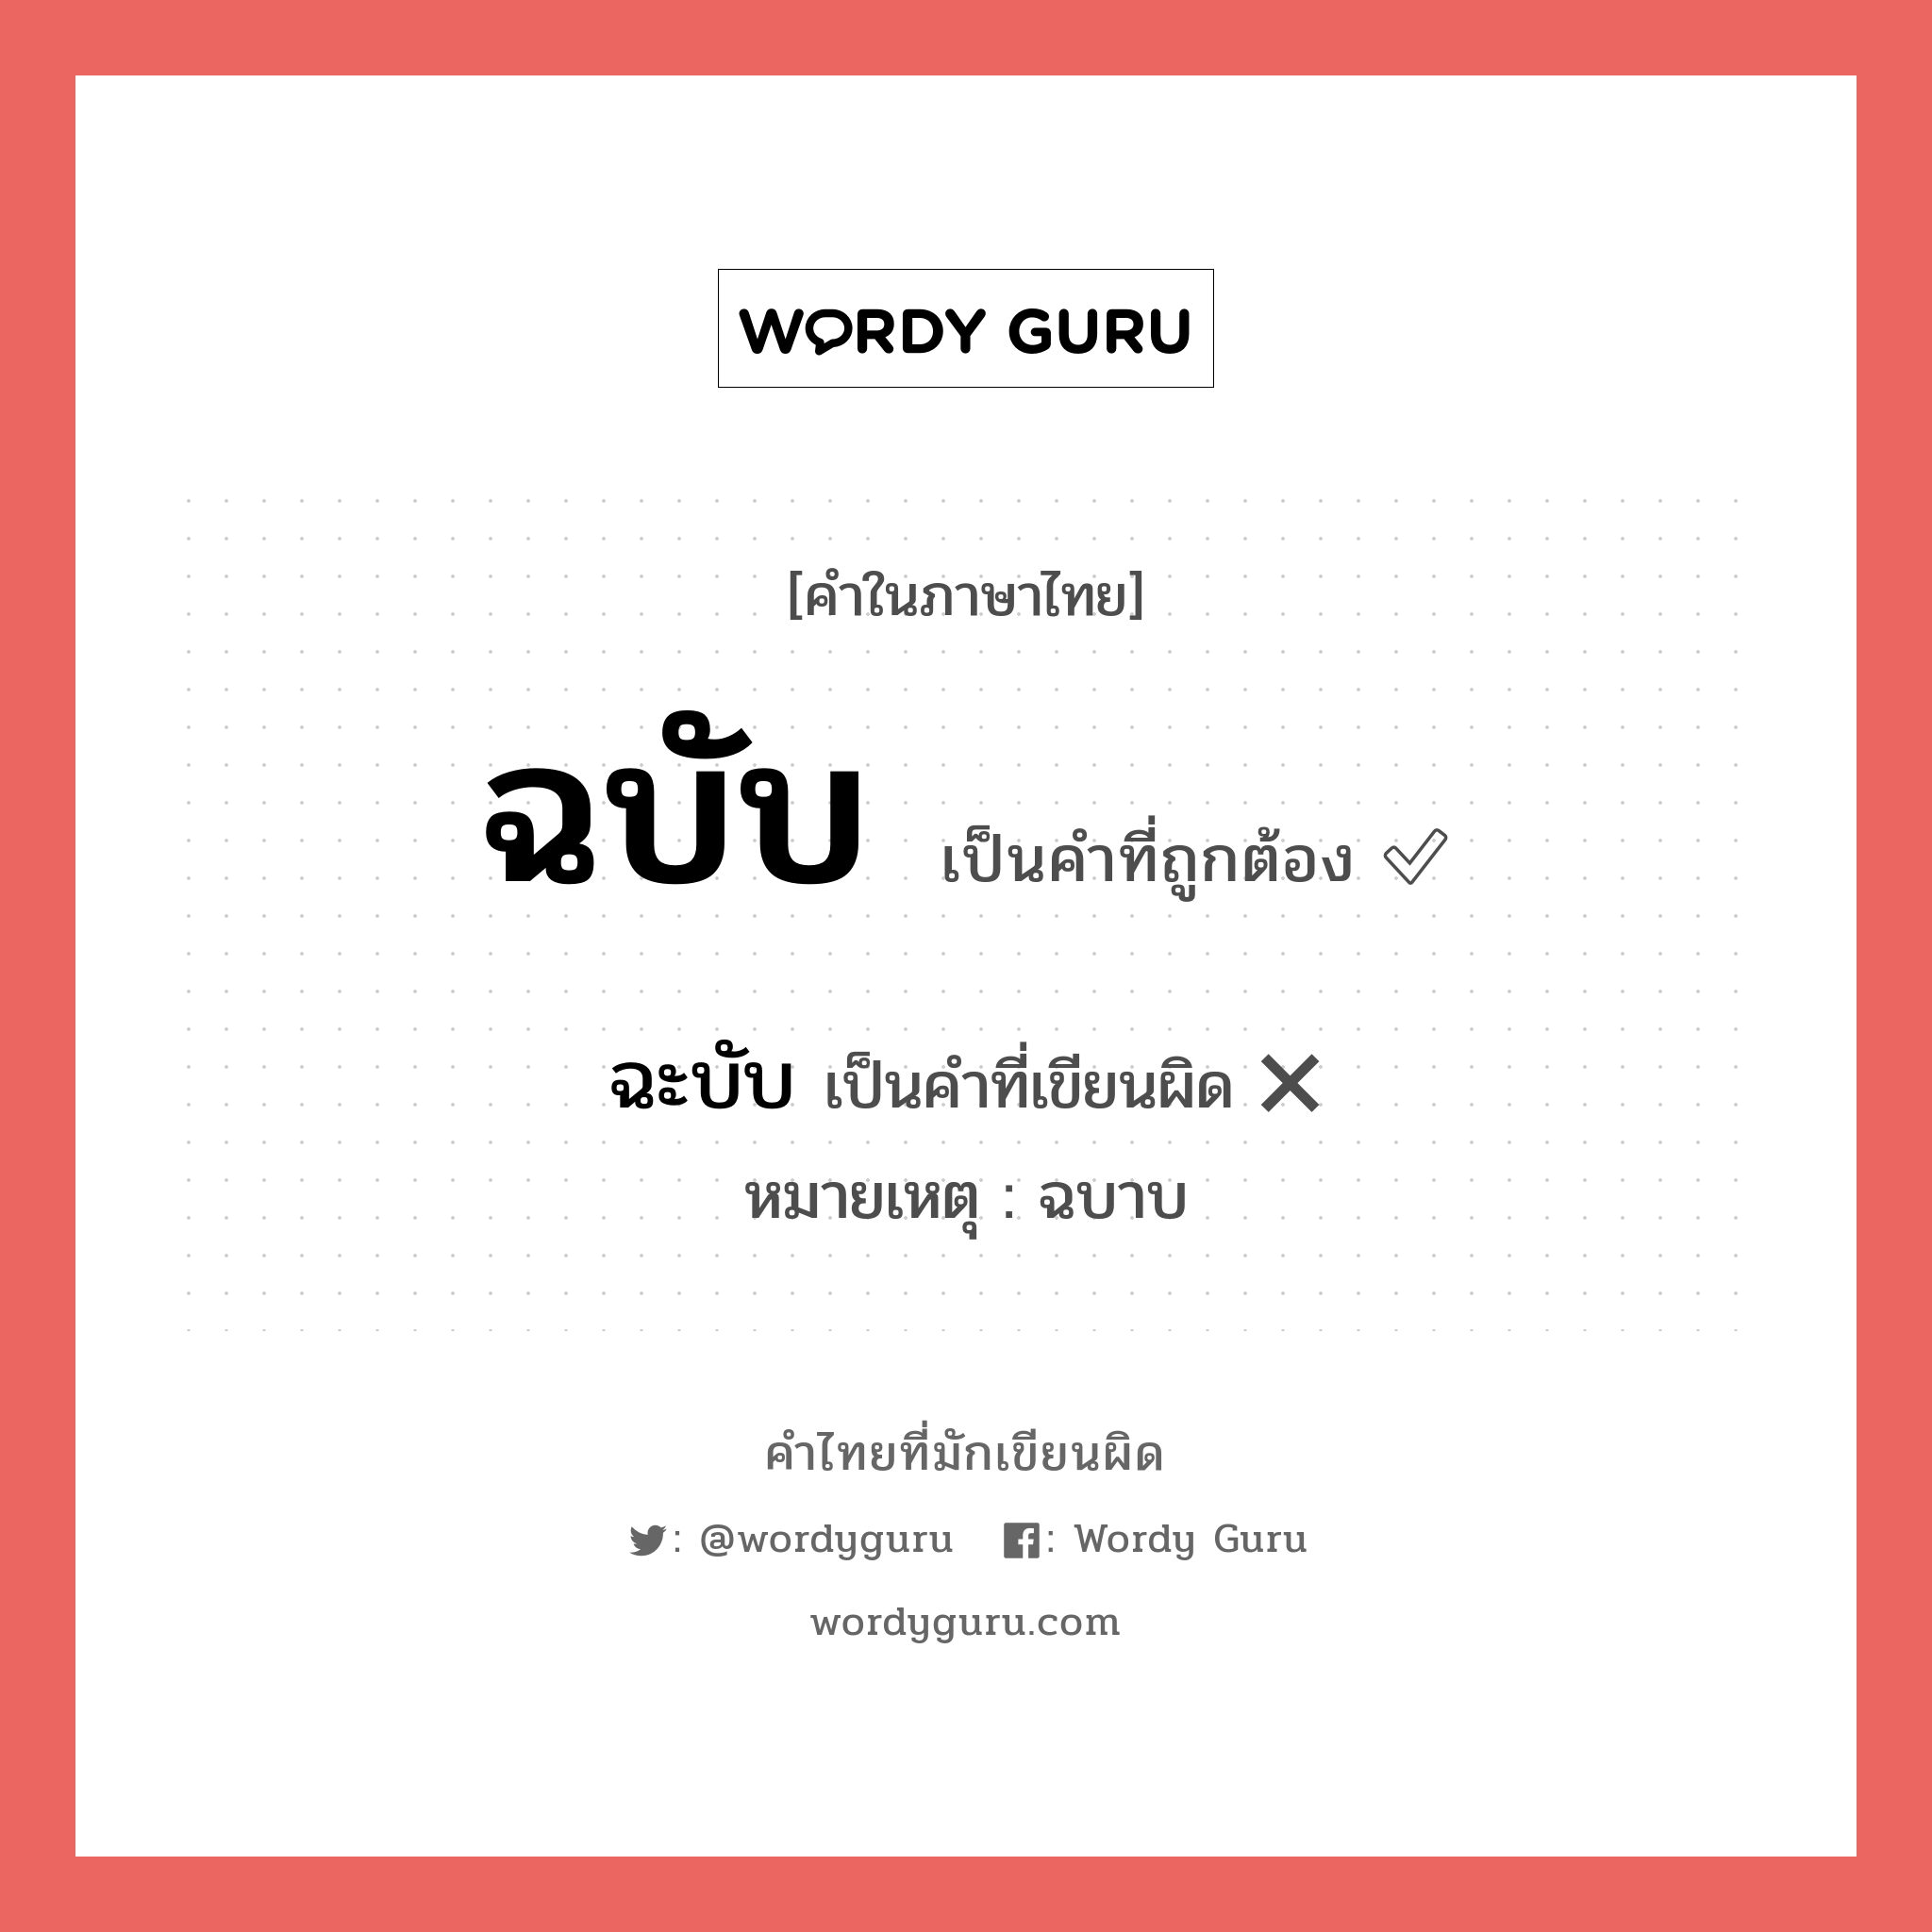 ฉบับ หรือ ฉะบับ เขียนยังไง? คำไหนเขียนถูก?, คำในภาษาไทยที่มักเขียนผิด ฉบับ คำที่ผิด ❌ ฉะบับ หมายเหตุ ฉบาบ